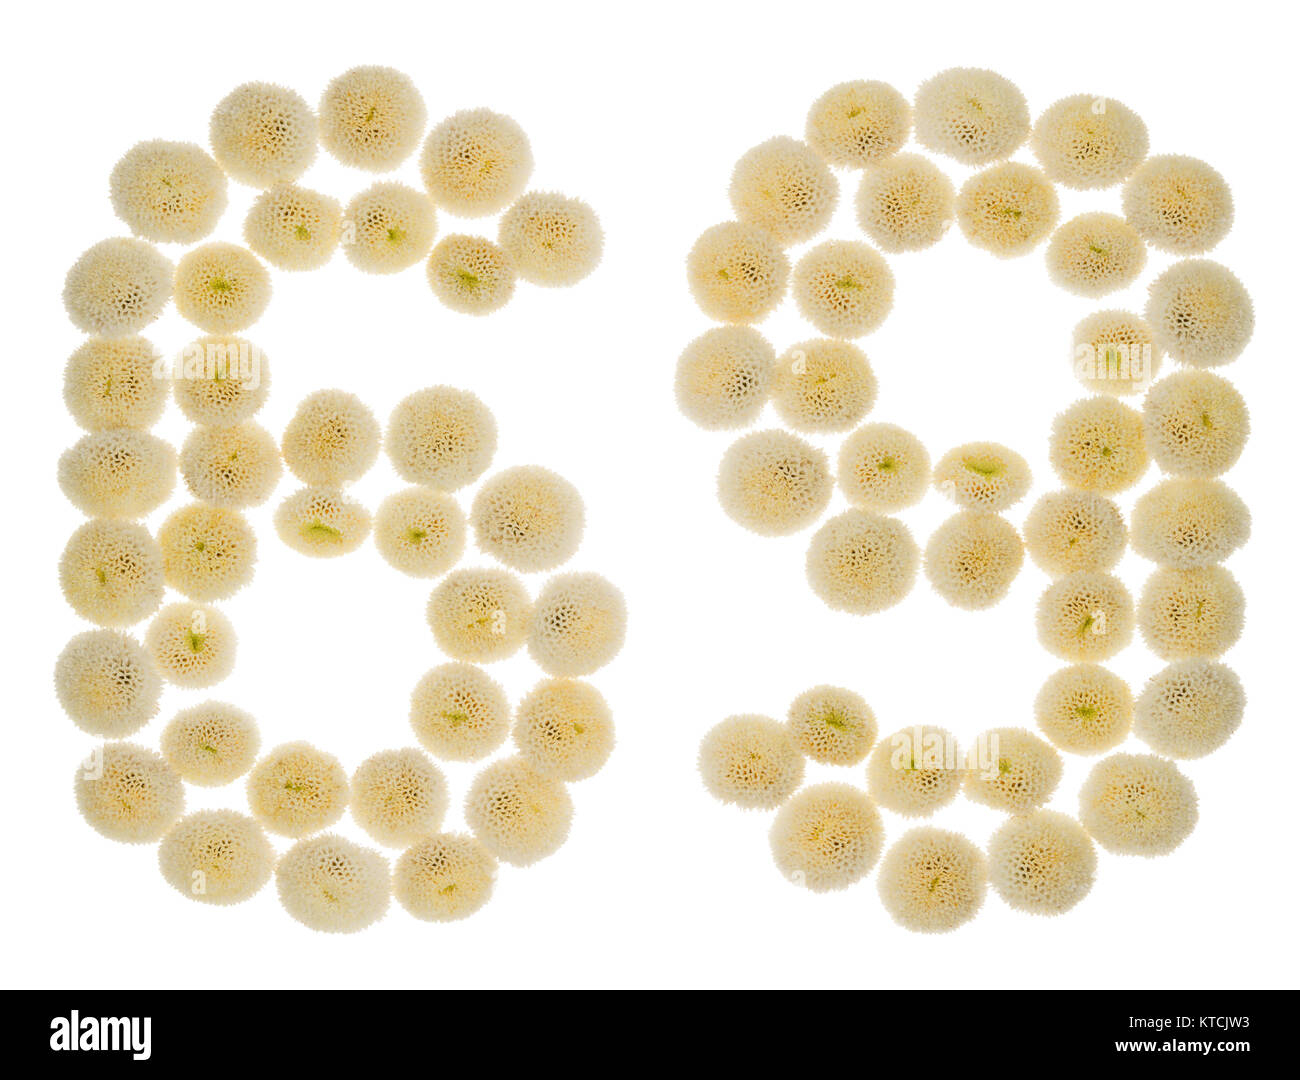 Chiffre arabe 69, soixante-neuf, à partir de crème fleurs de chrysanthème, isolé sur fond blanc Banque D'Images